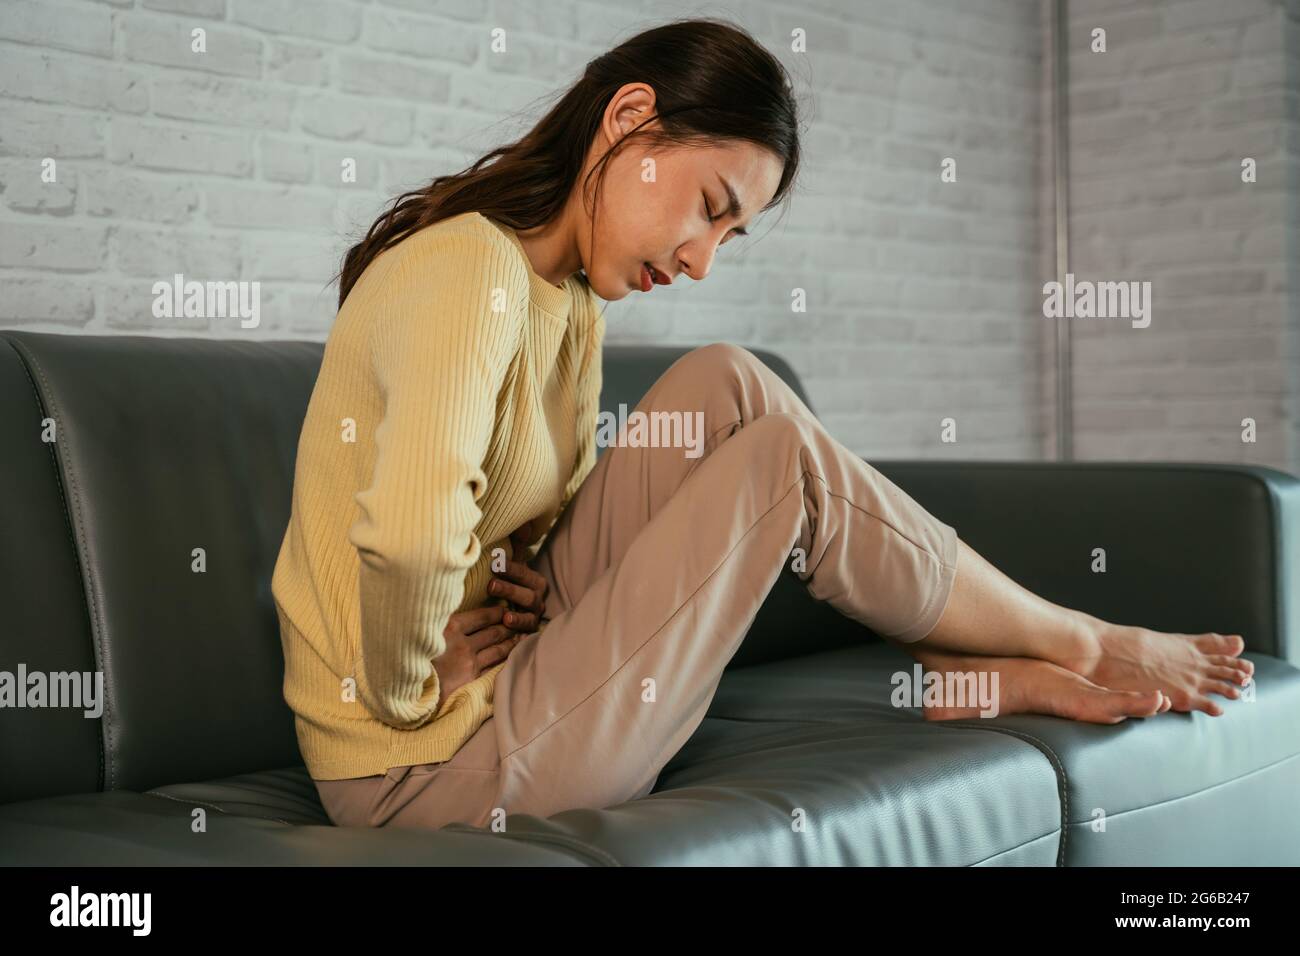 Traurige, verstörte und unglückliche junge asiatische Frau, die die Hände am Bauch hält und an Bauchschmerzen leidet, während die Augen zu Hause die Menstruation haben Stockfoto